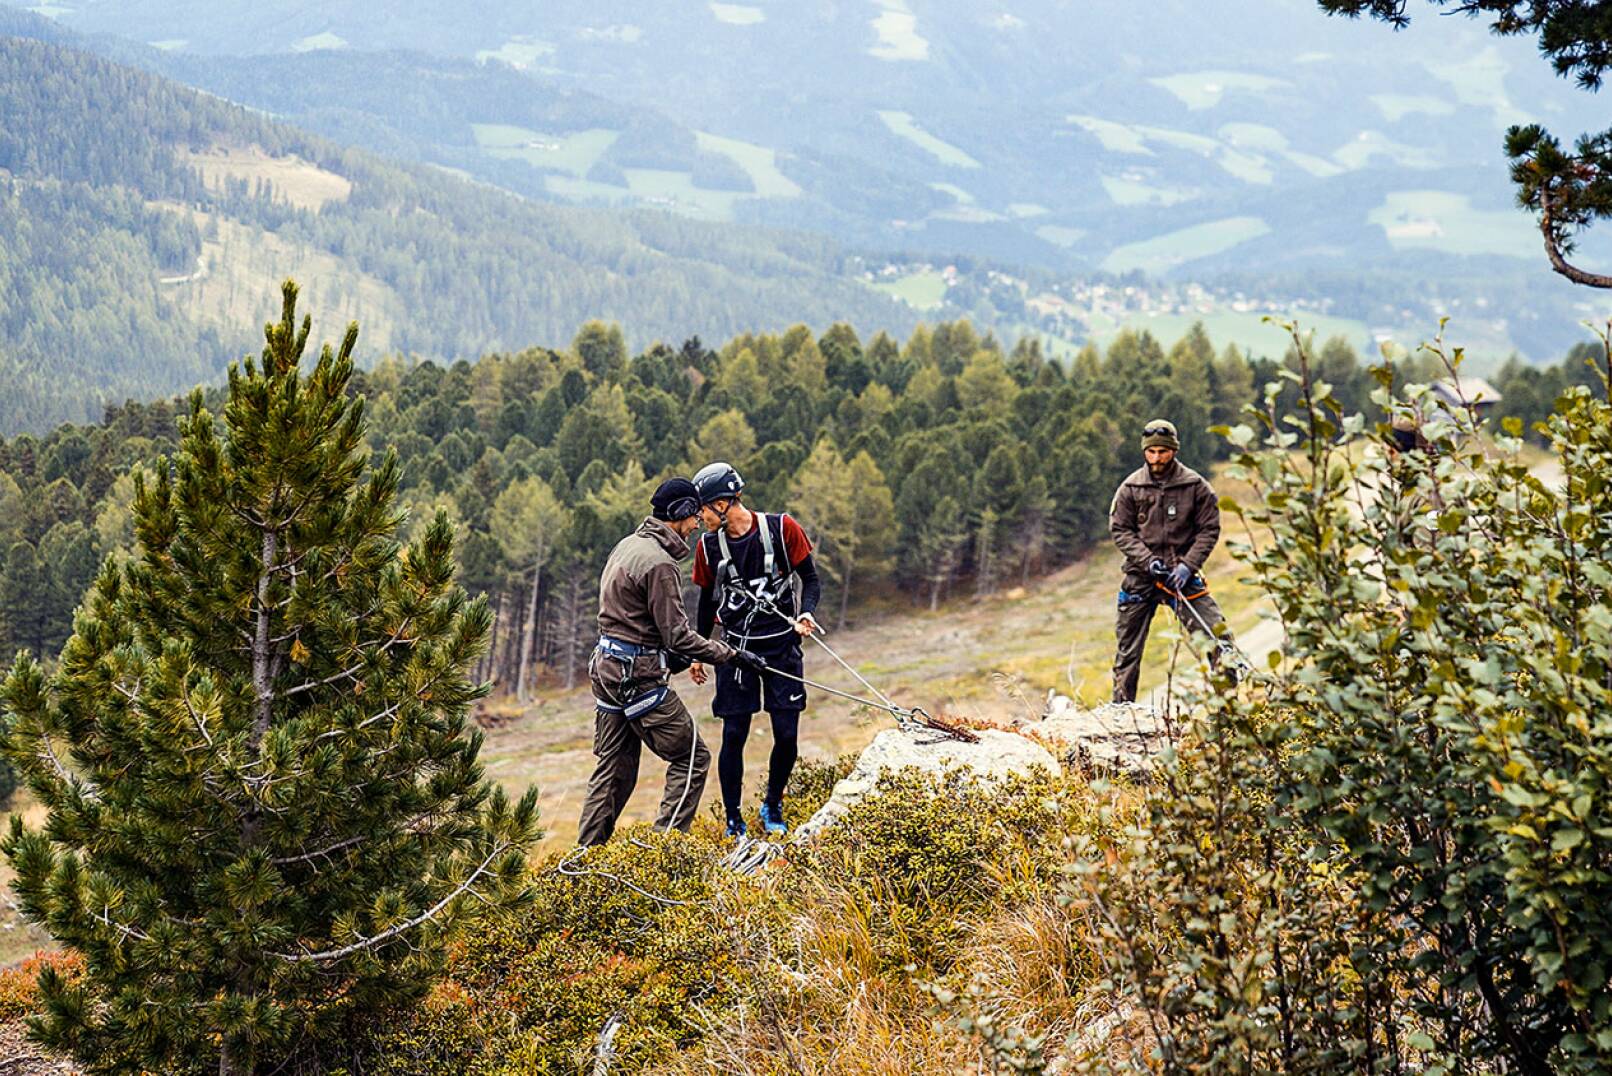 Steyr Challenge - Danach seilt man sich von einer 50 m hohen Felswand ab und läuft anschließend 400 m. - © Starkl!Film